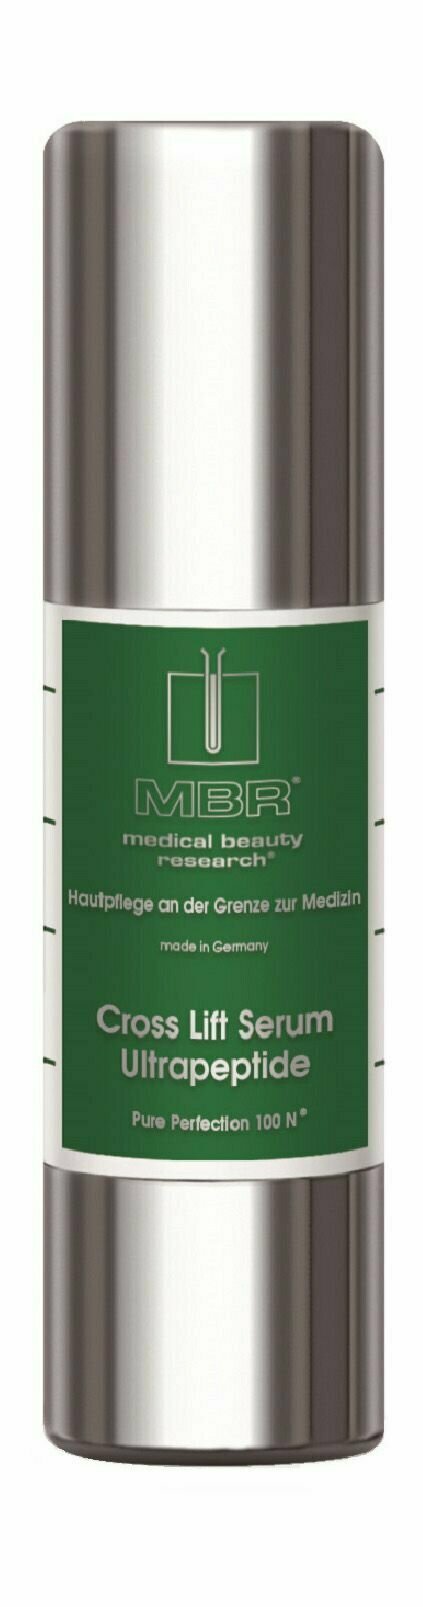 Сыворотка MBR Pure Perfection 100N Cross Lift Serum Ultrapeptide